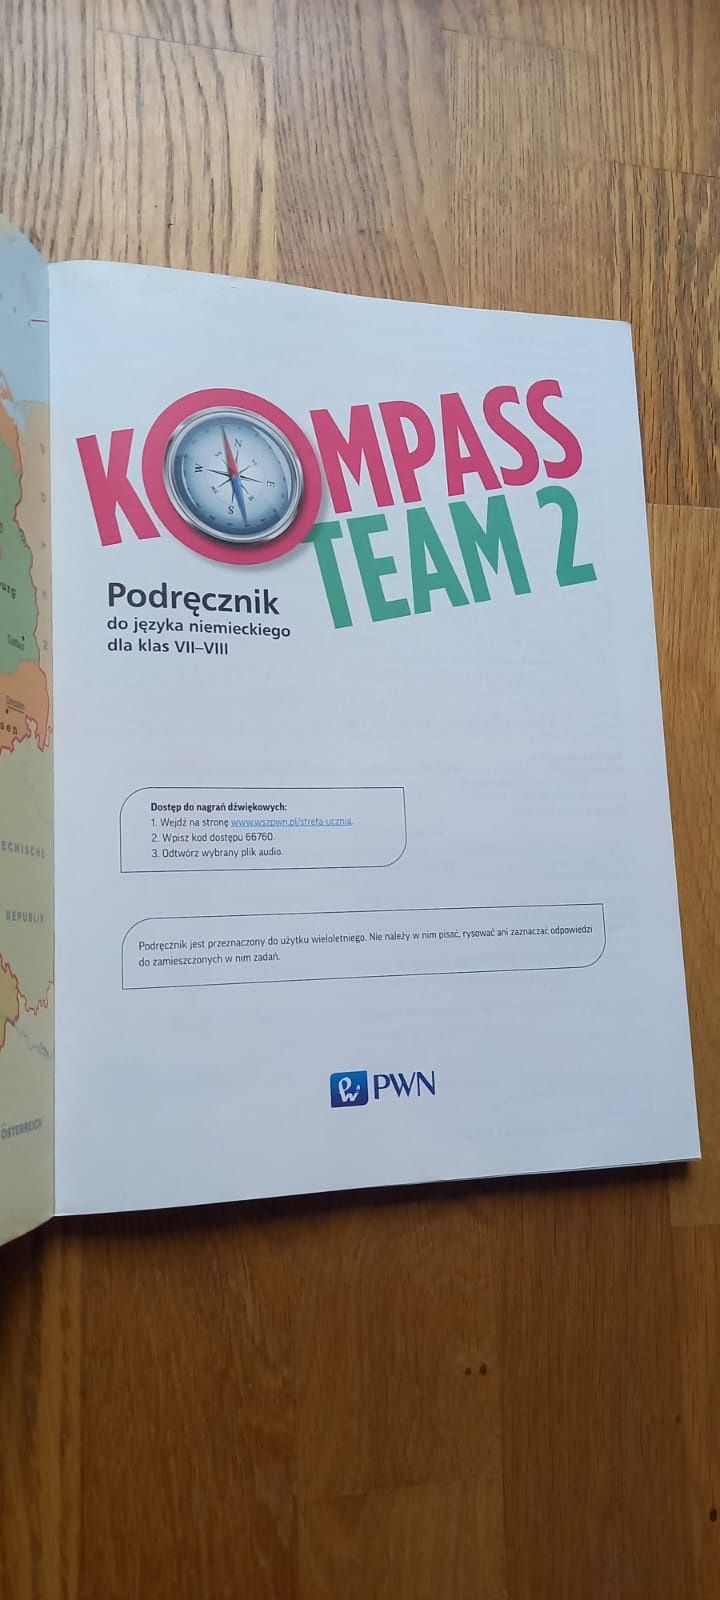 Kompass team 2- podrecznik do jezyka niemieckiego dla klas 7-8